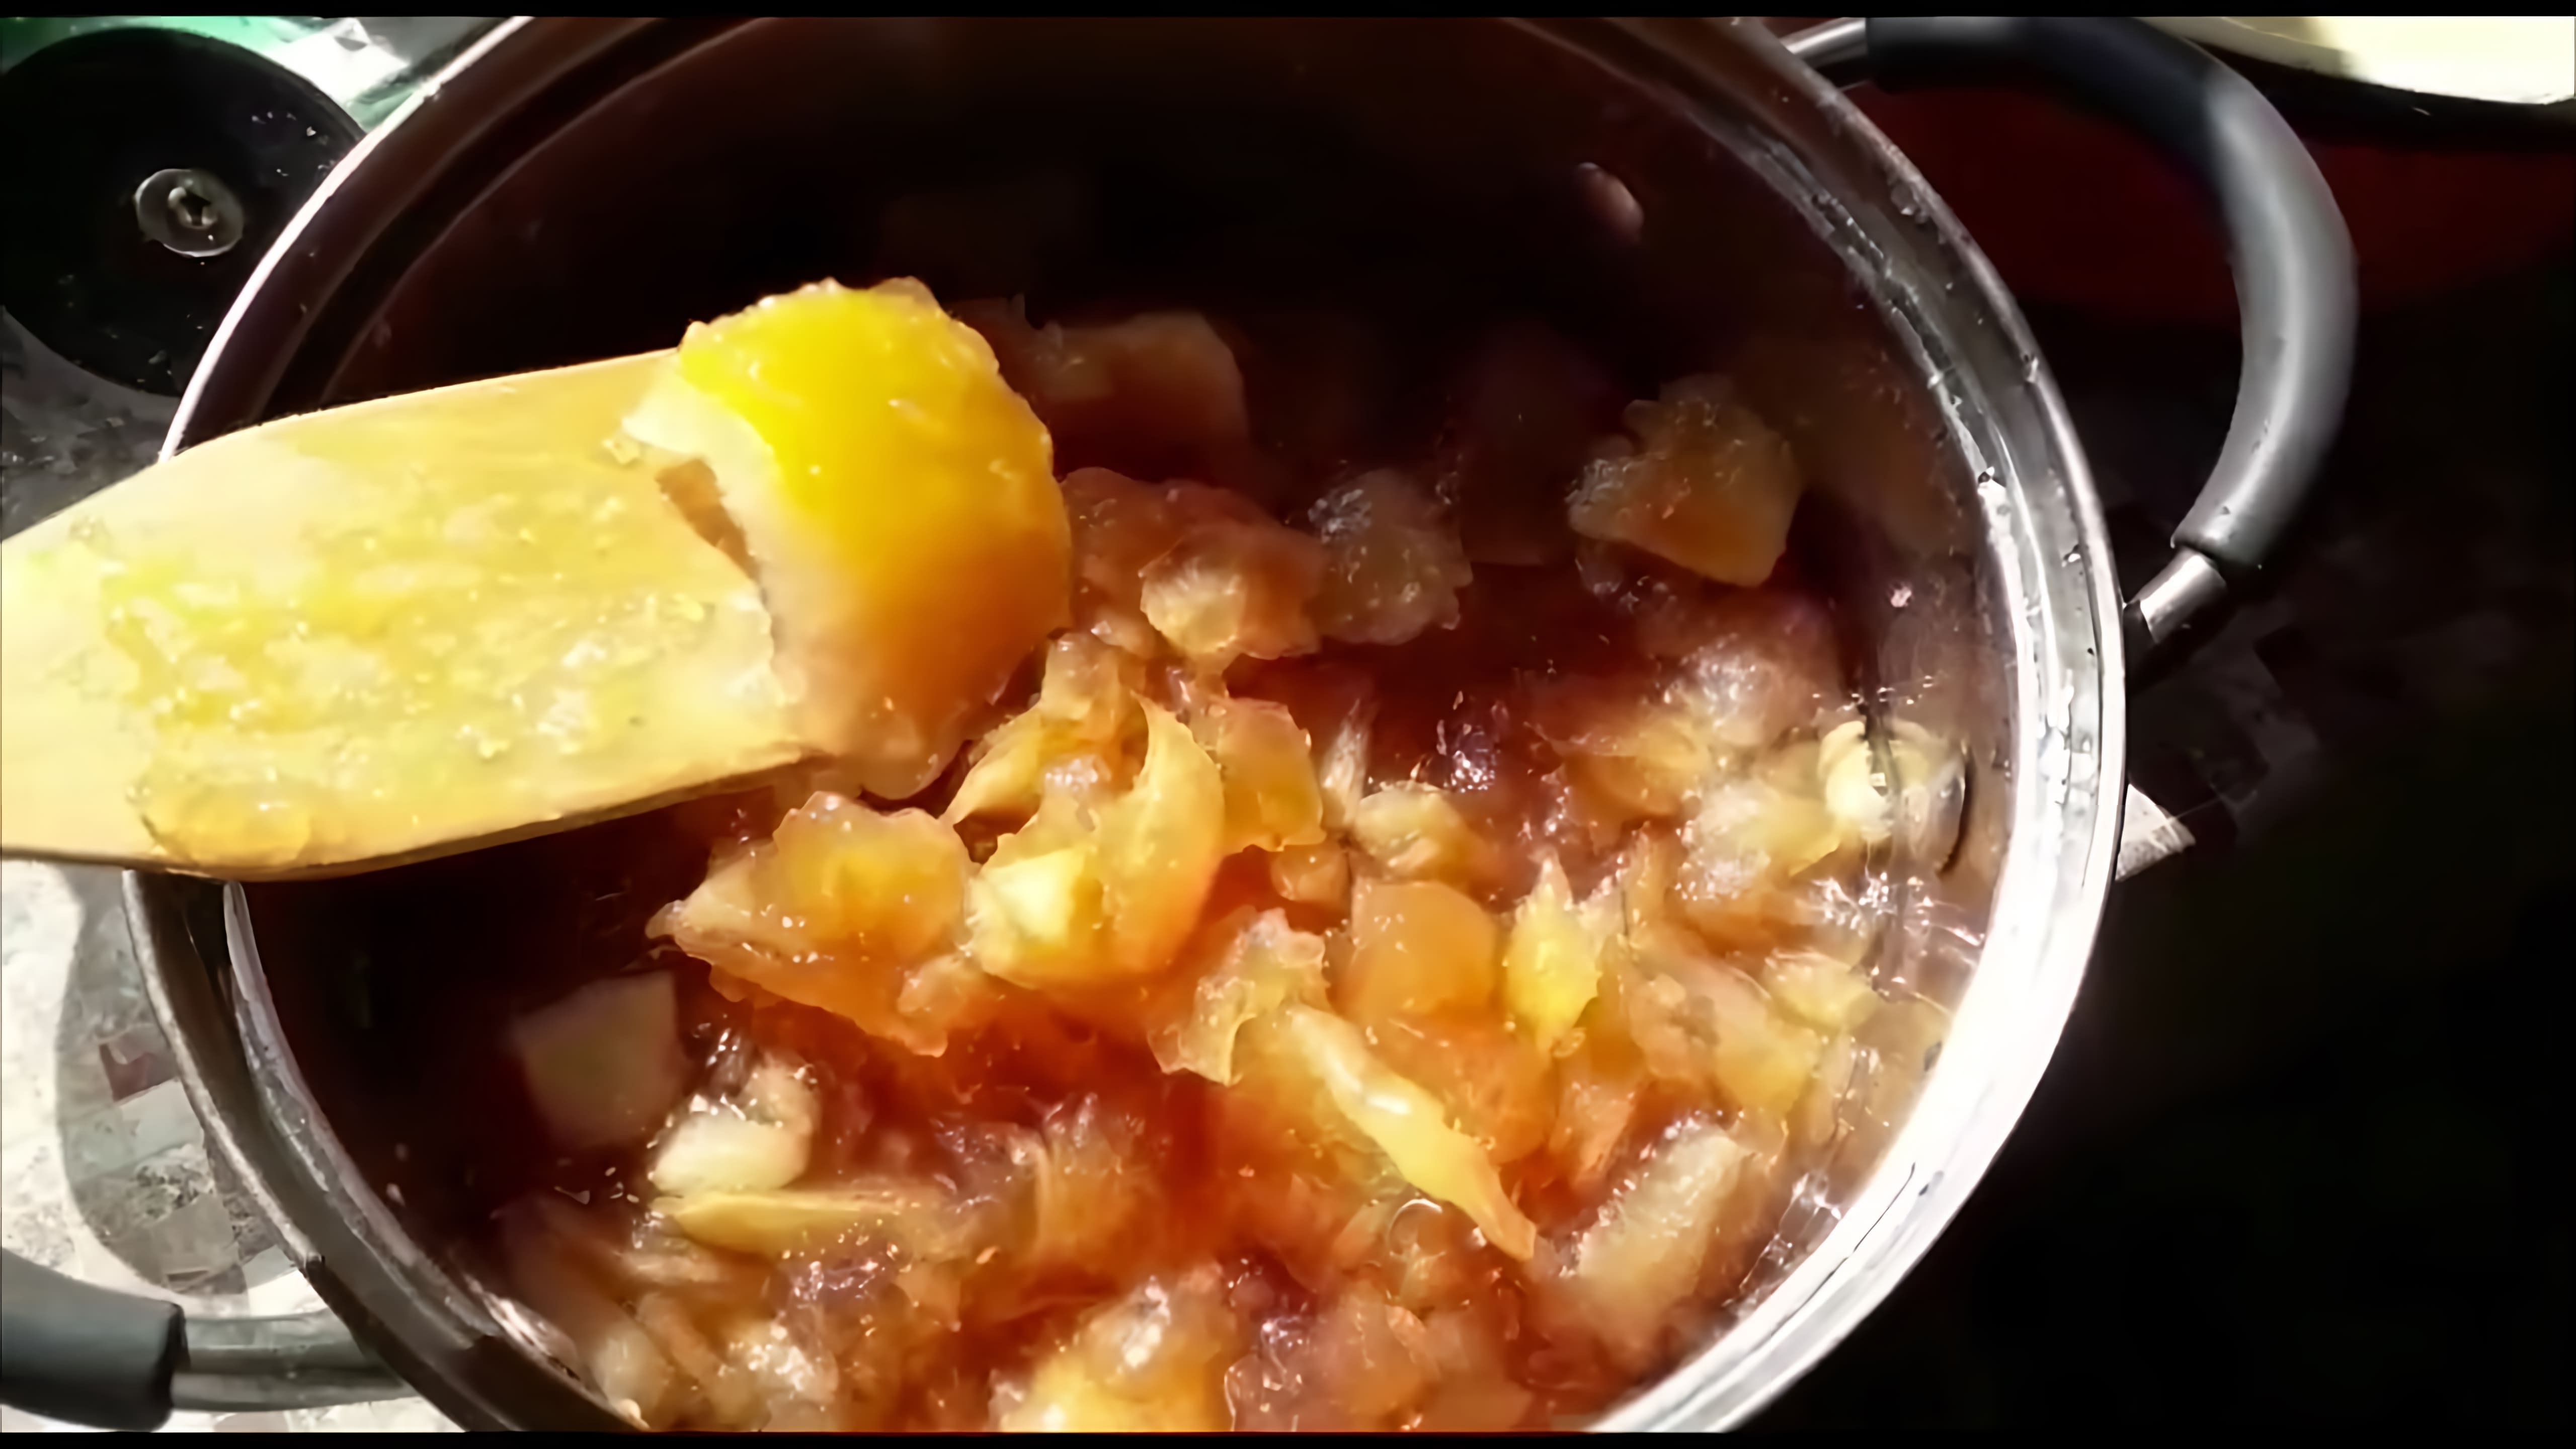 В этом видео автор рассказывает о процессе приготовления варенья из антоновских яблок и лимона